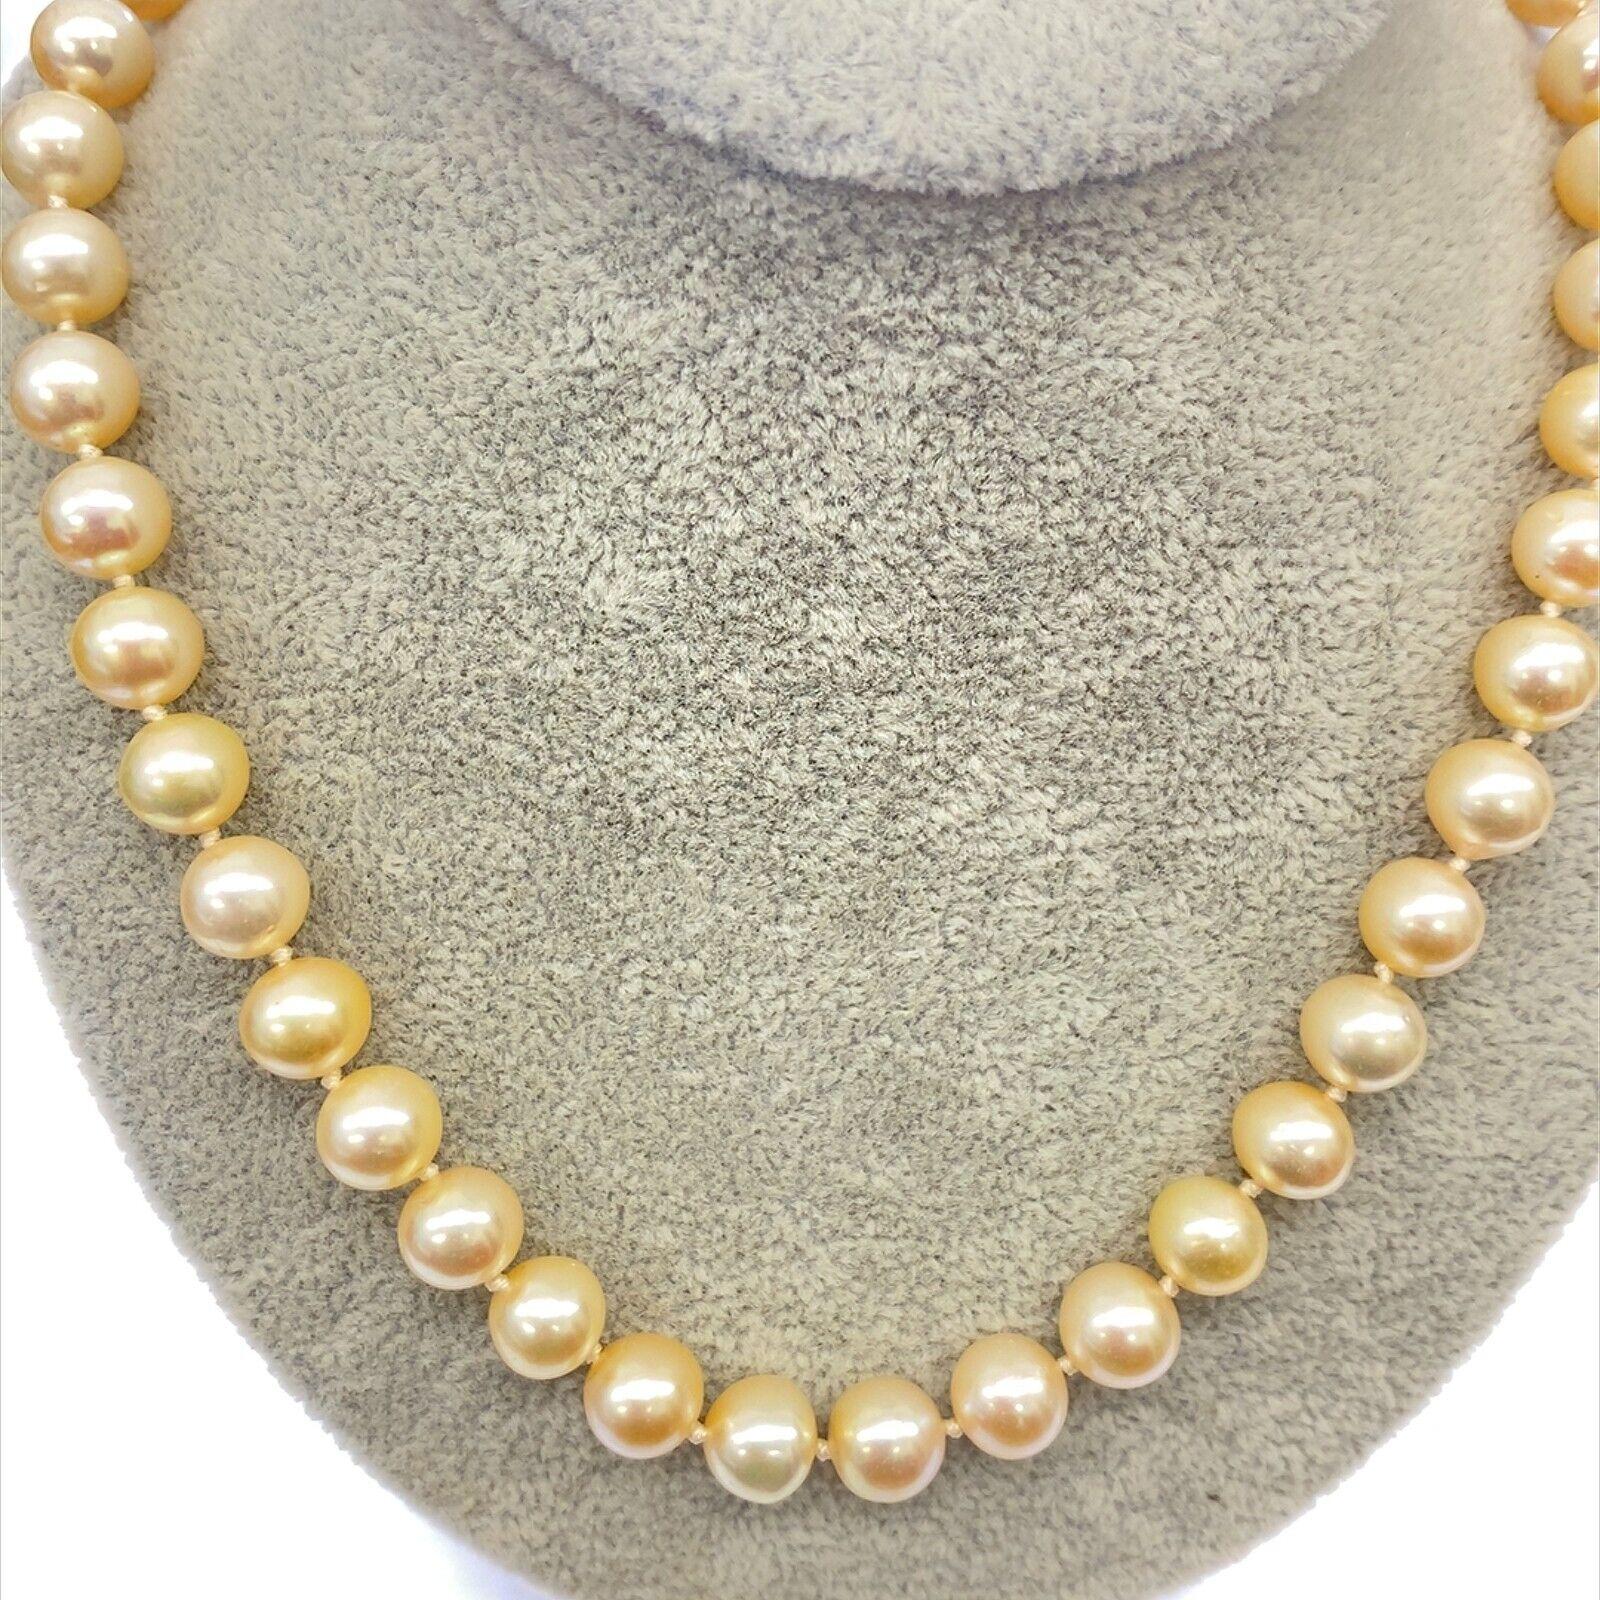 Eine wunderschöne, einzigartige und feminine Perlenkette. 8 mm große weiße Süßwasser-Zuchtperlen sind auf einen Verschluss aus 18 Karat Gelbgold aufgefädelt. Diese Zuchtperlen sind eine klassische und vielseitige Wahl.

Zusätzliche Informationen: